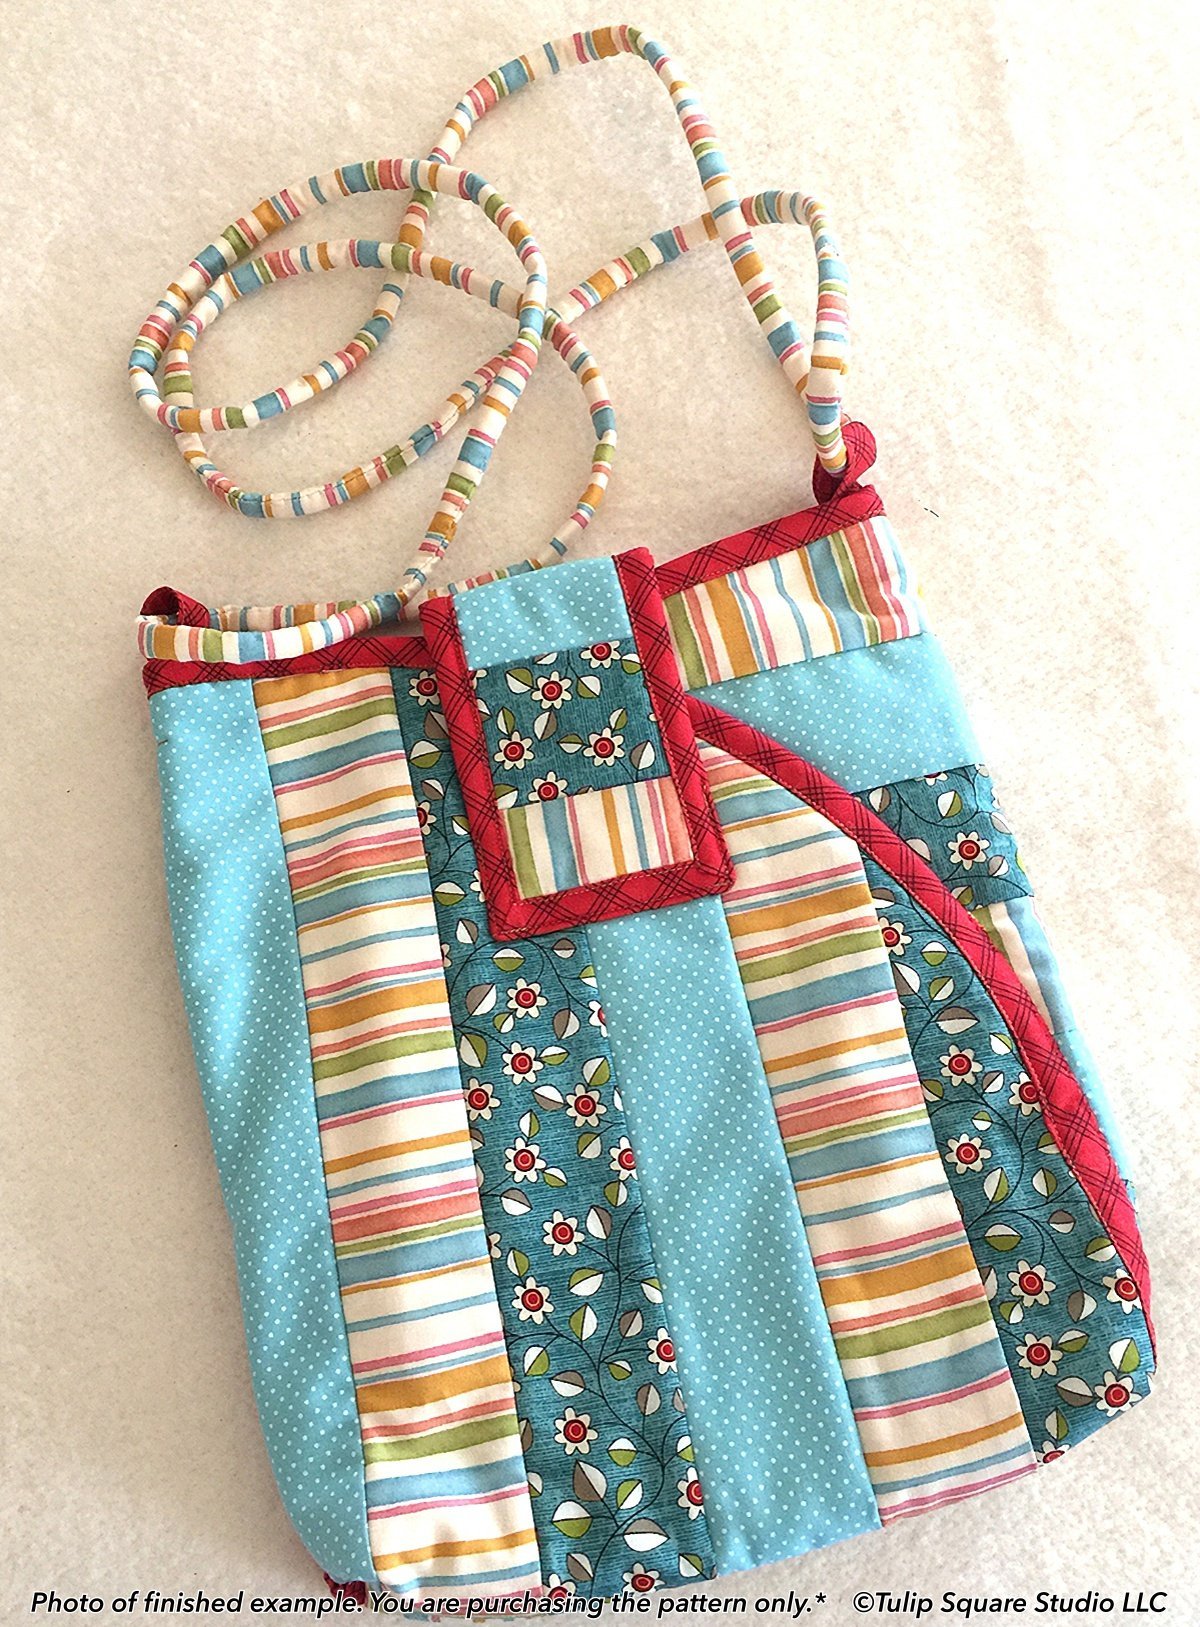 Quilted bag, patchwork bag, handmade bag, handbag made of co - Inspire  Uplift